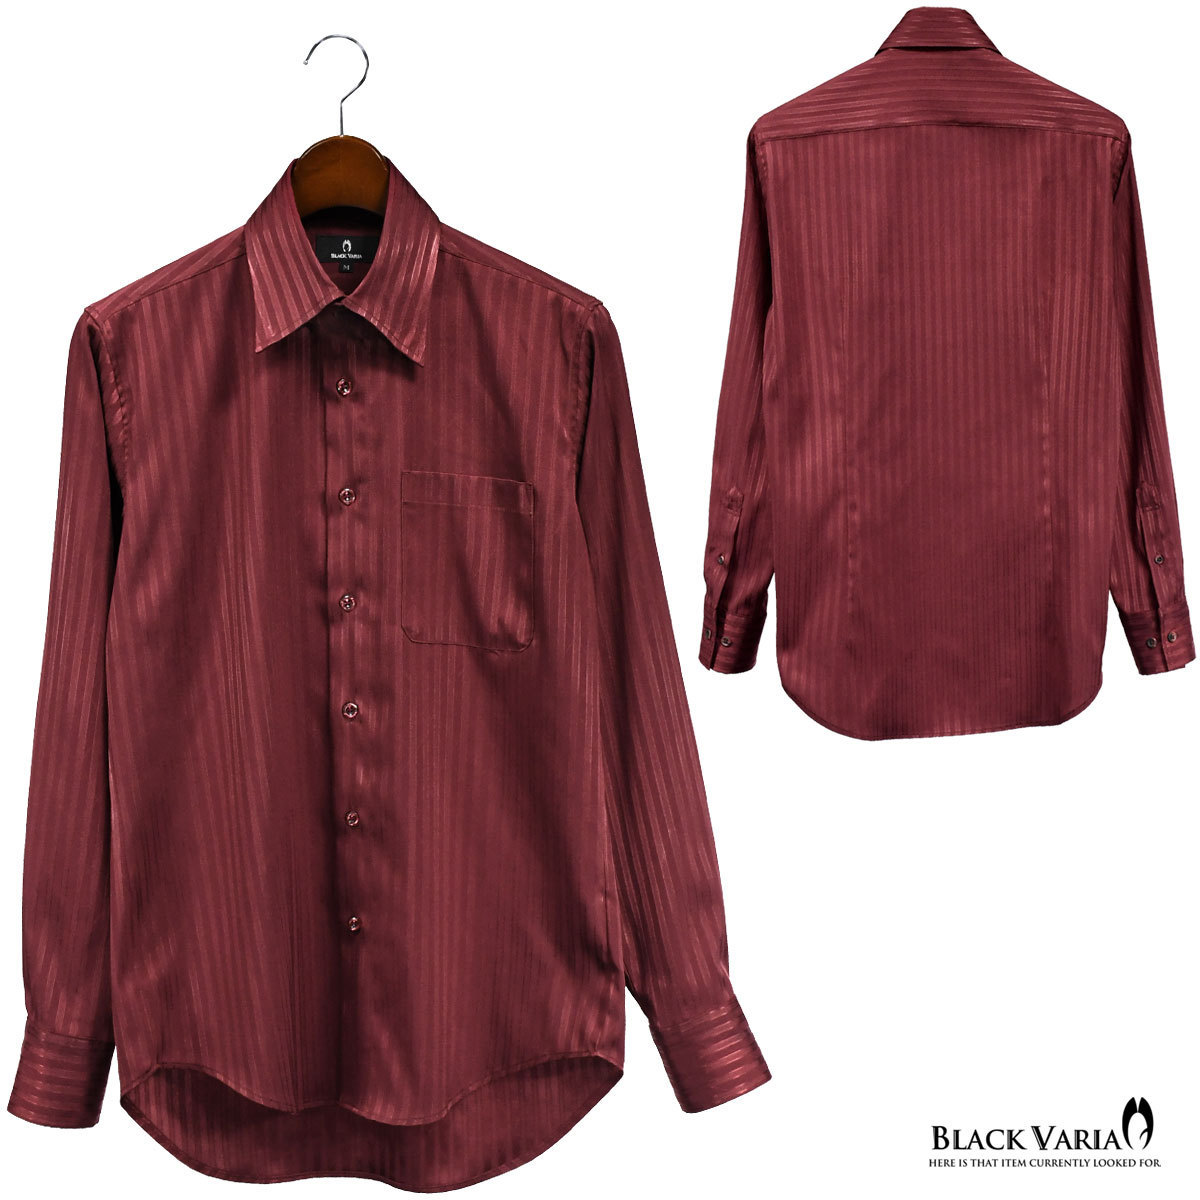 a191850-win BLACK VARIA ドゥエボットーニ ストライプ柄 ジャガード織柄[レギュラーカラー]サテンシャツ メンズ(ワインレッド赤) XL_画像6